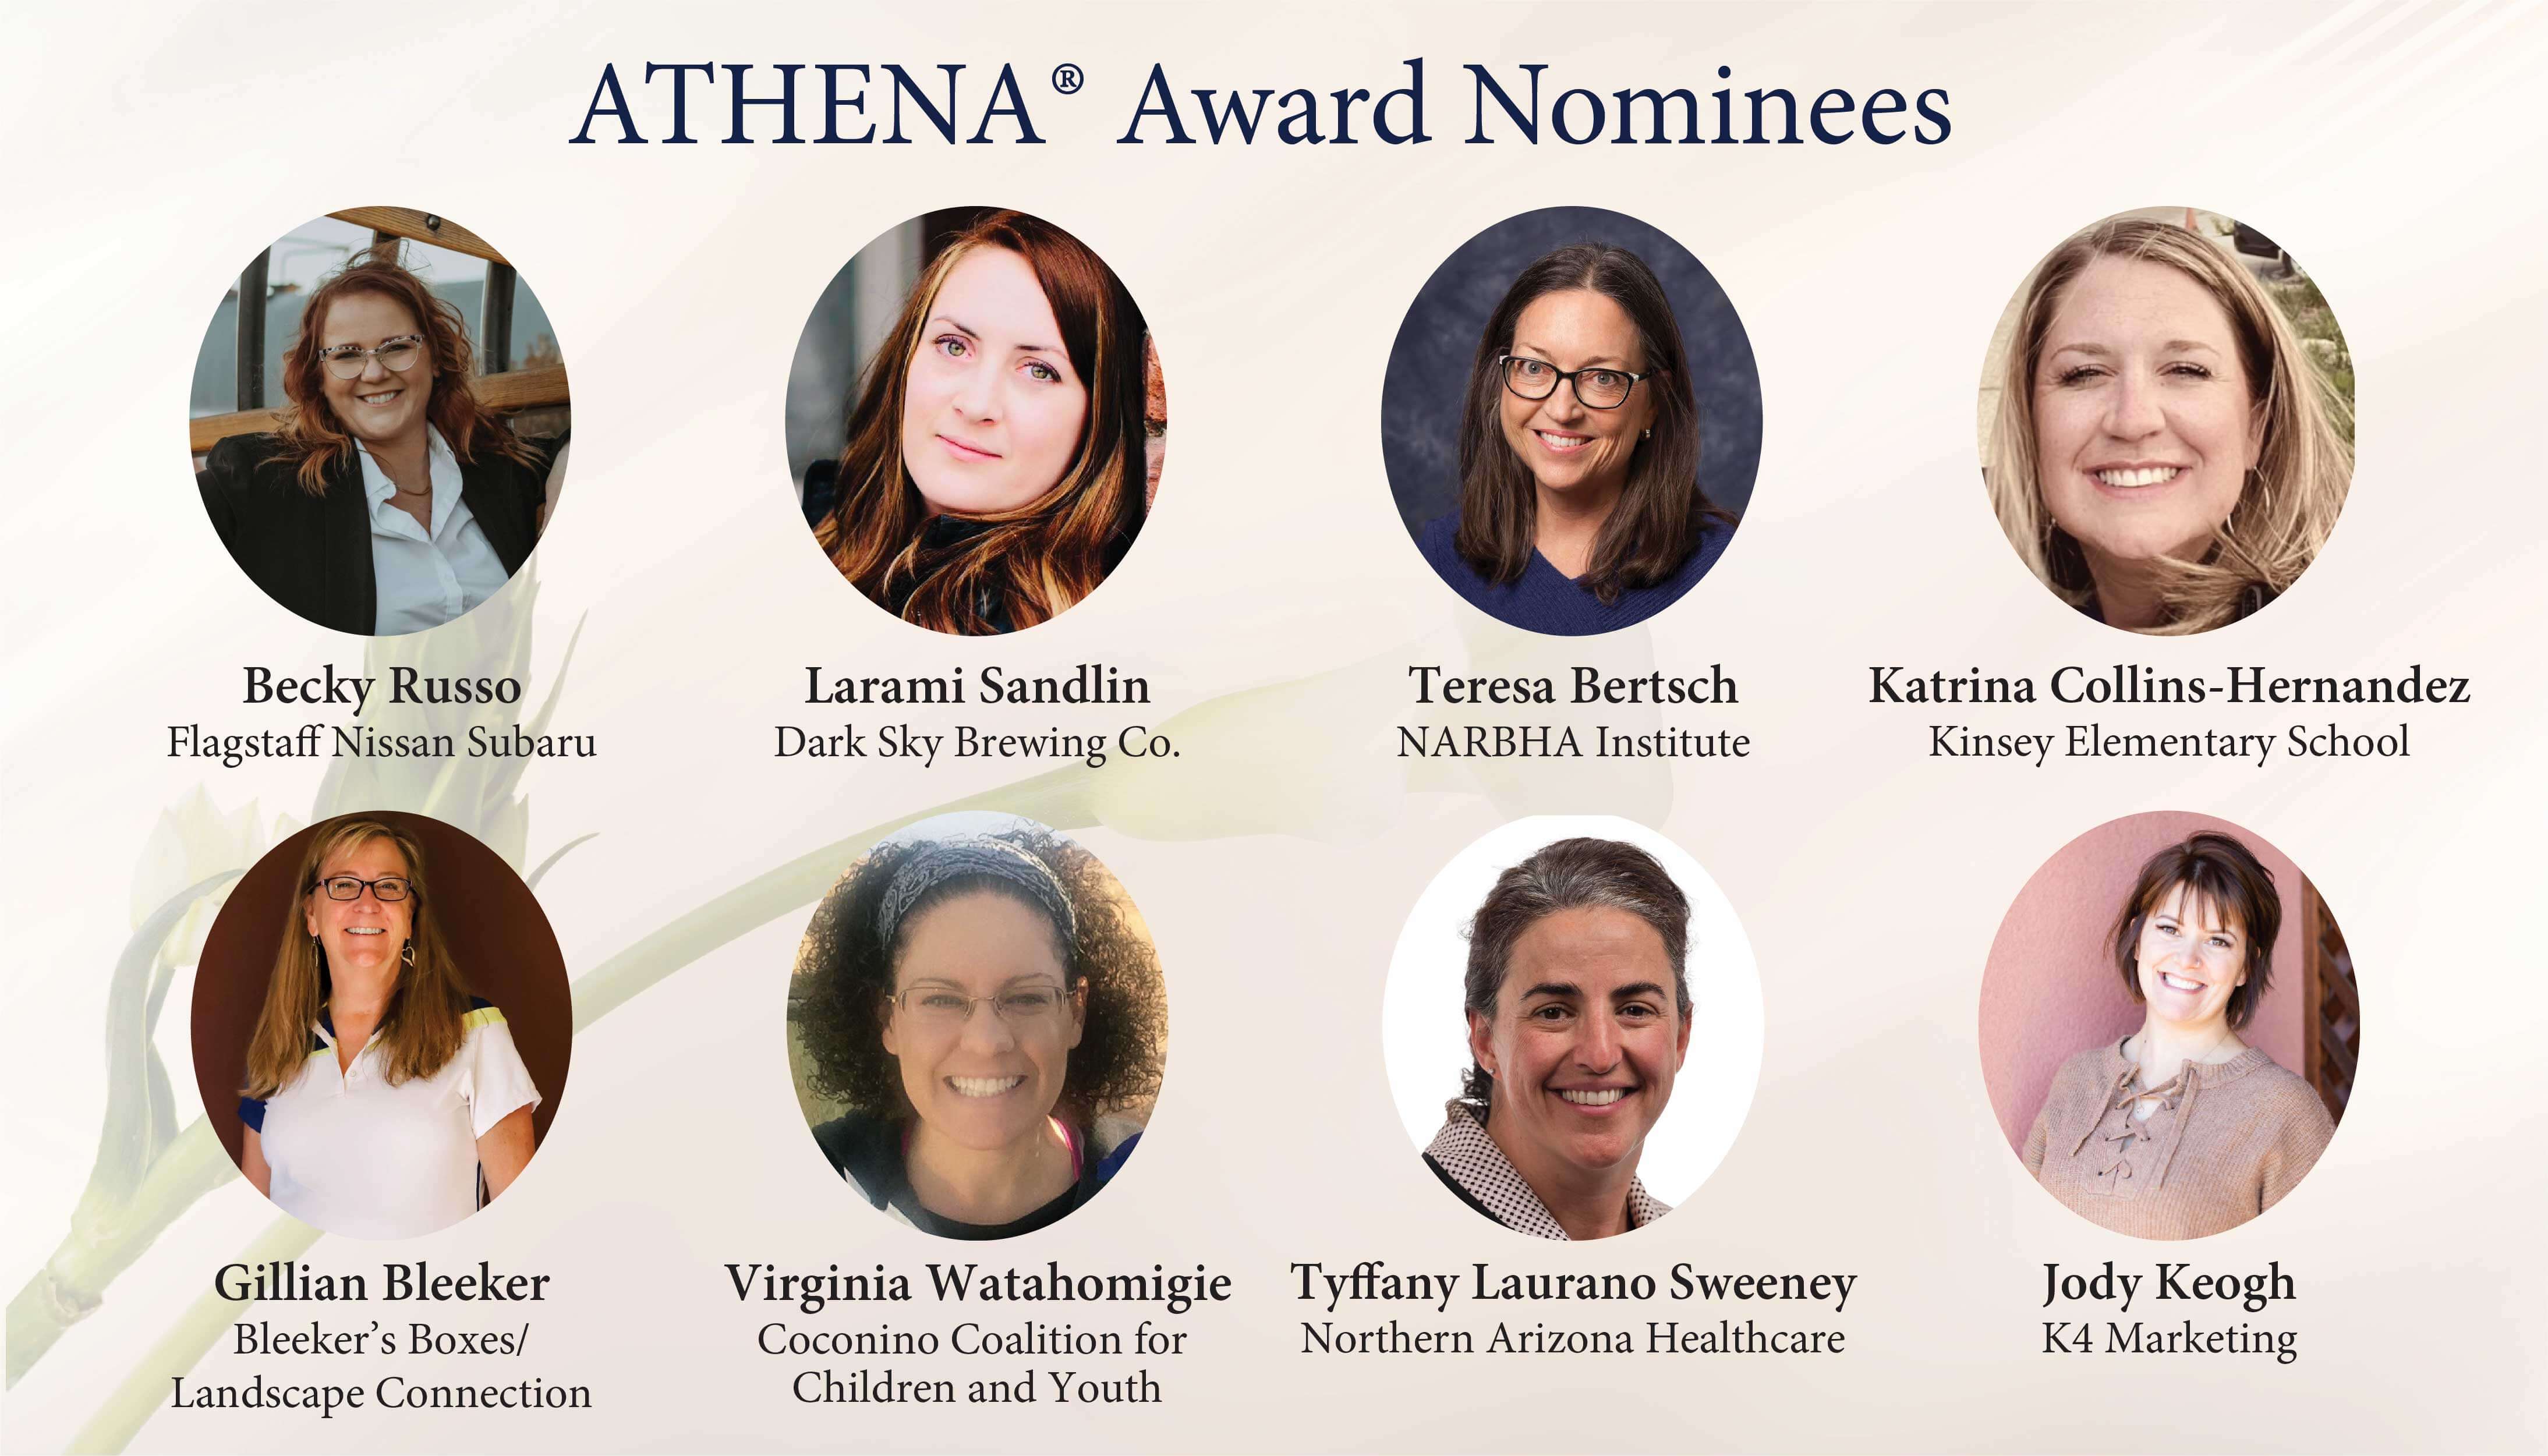 ATHENA nominees